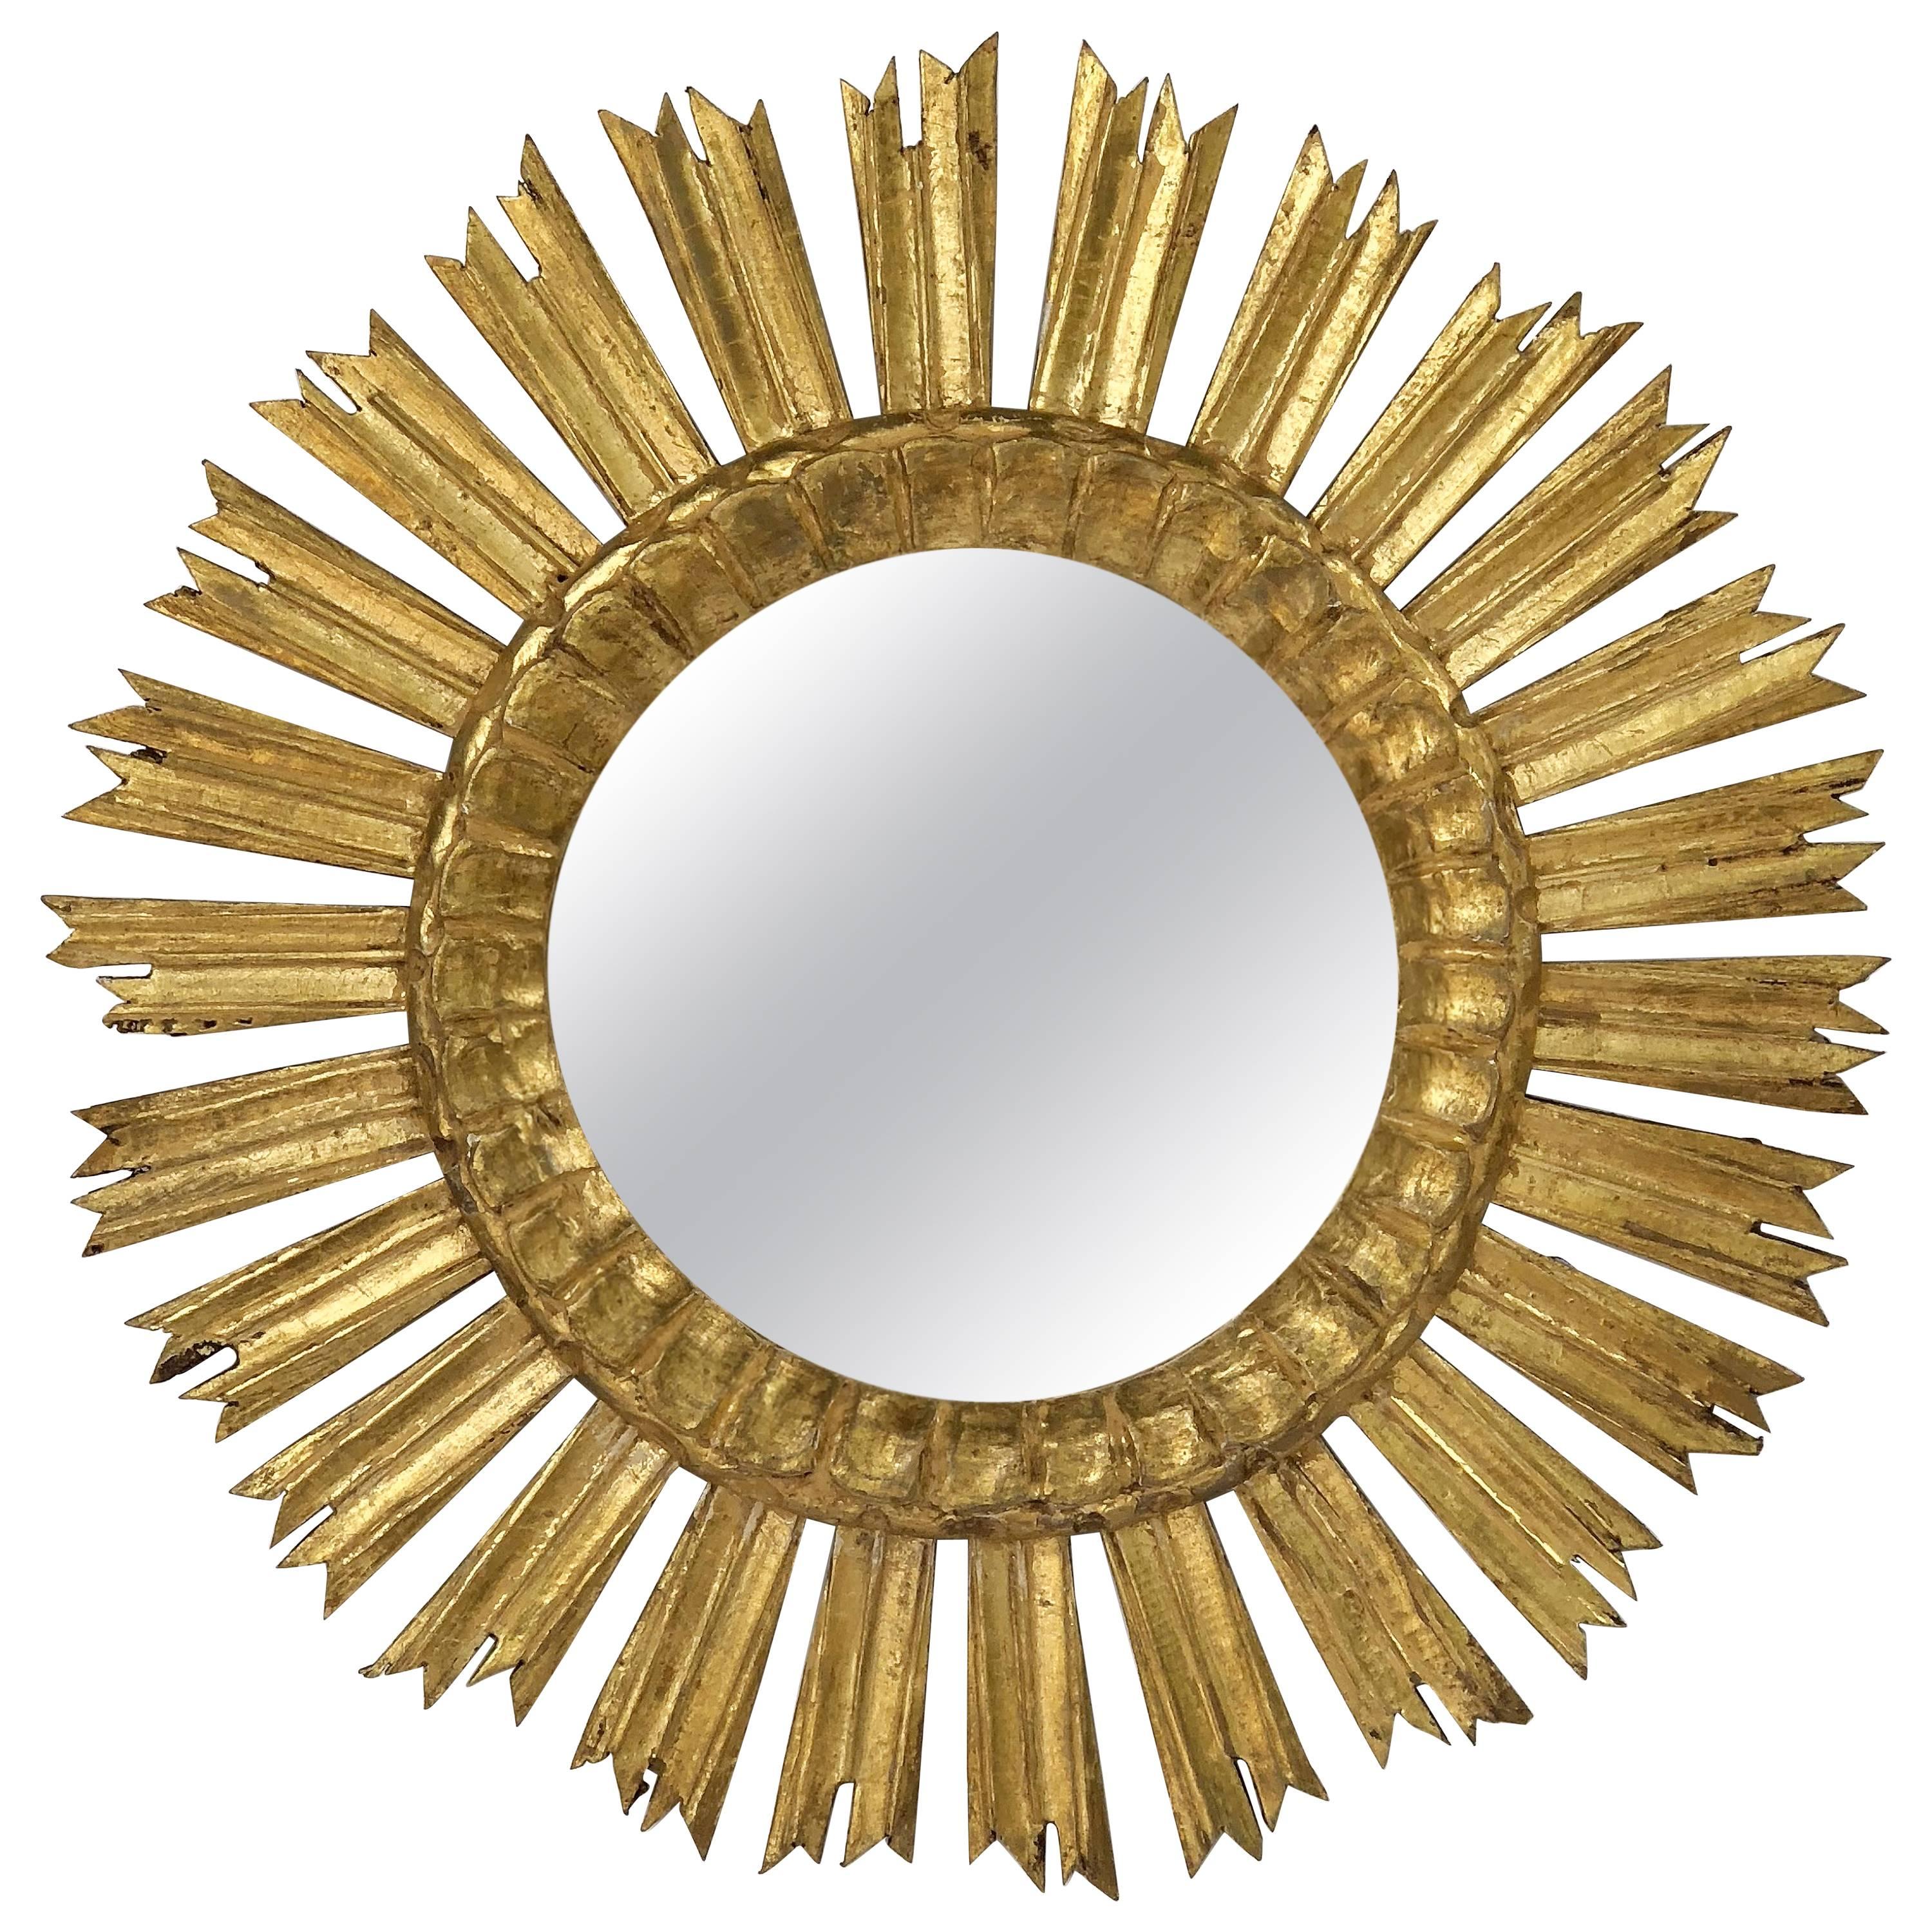 French Gilt Starburst or Sunburst Mirror (Diameter 21)